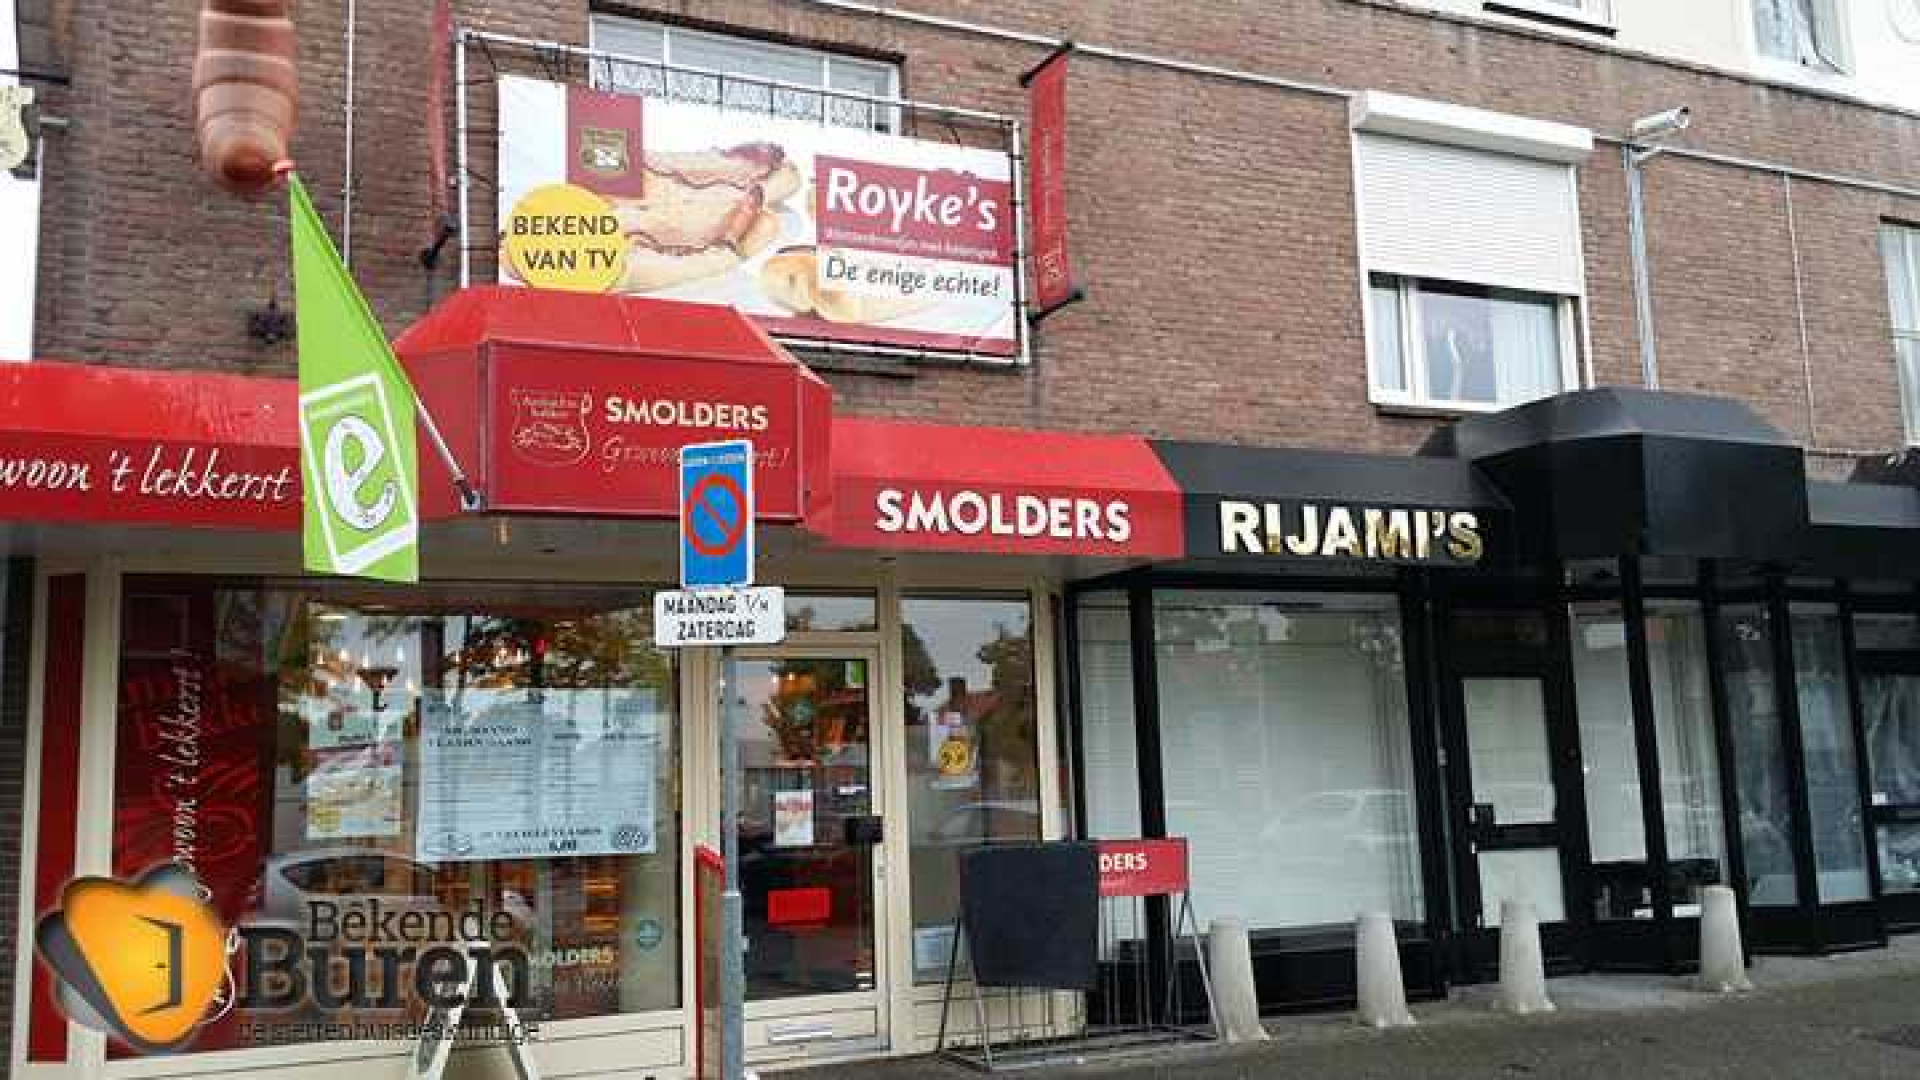 Roy Donders verdient aan verkoop van de worstenbroodjes. Hier het bewijs. Zie foto's 1